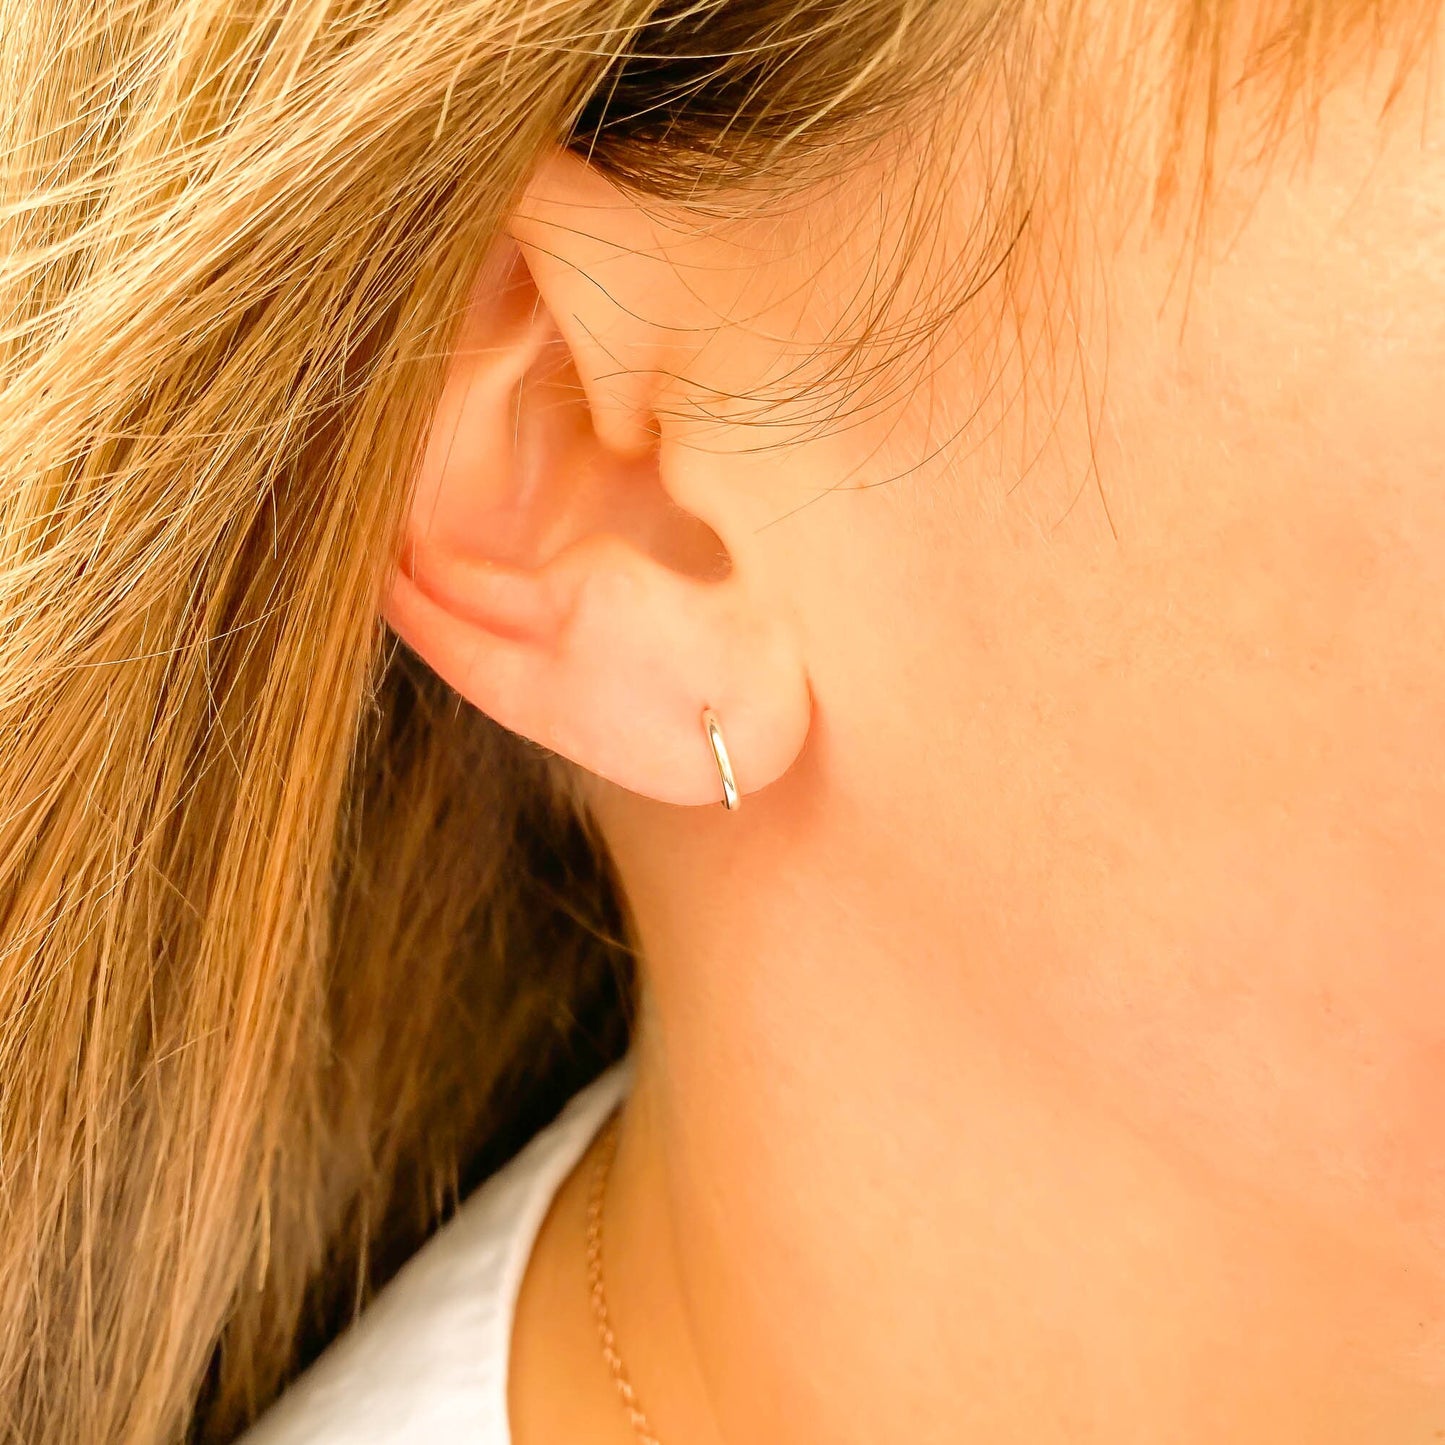 Sterling Silver Hoop Earrings with Posts, 7mm